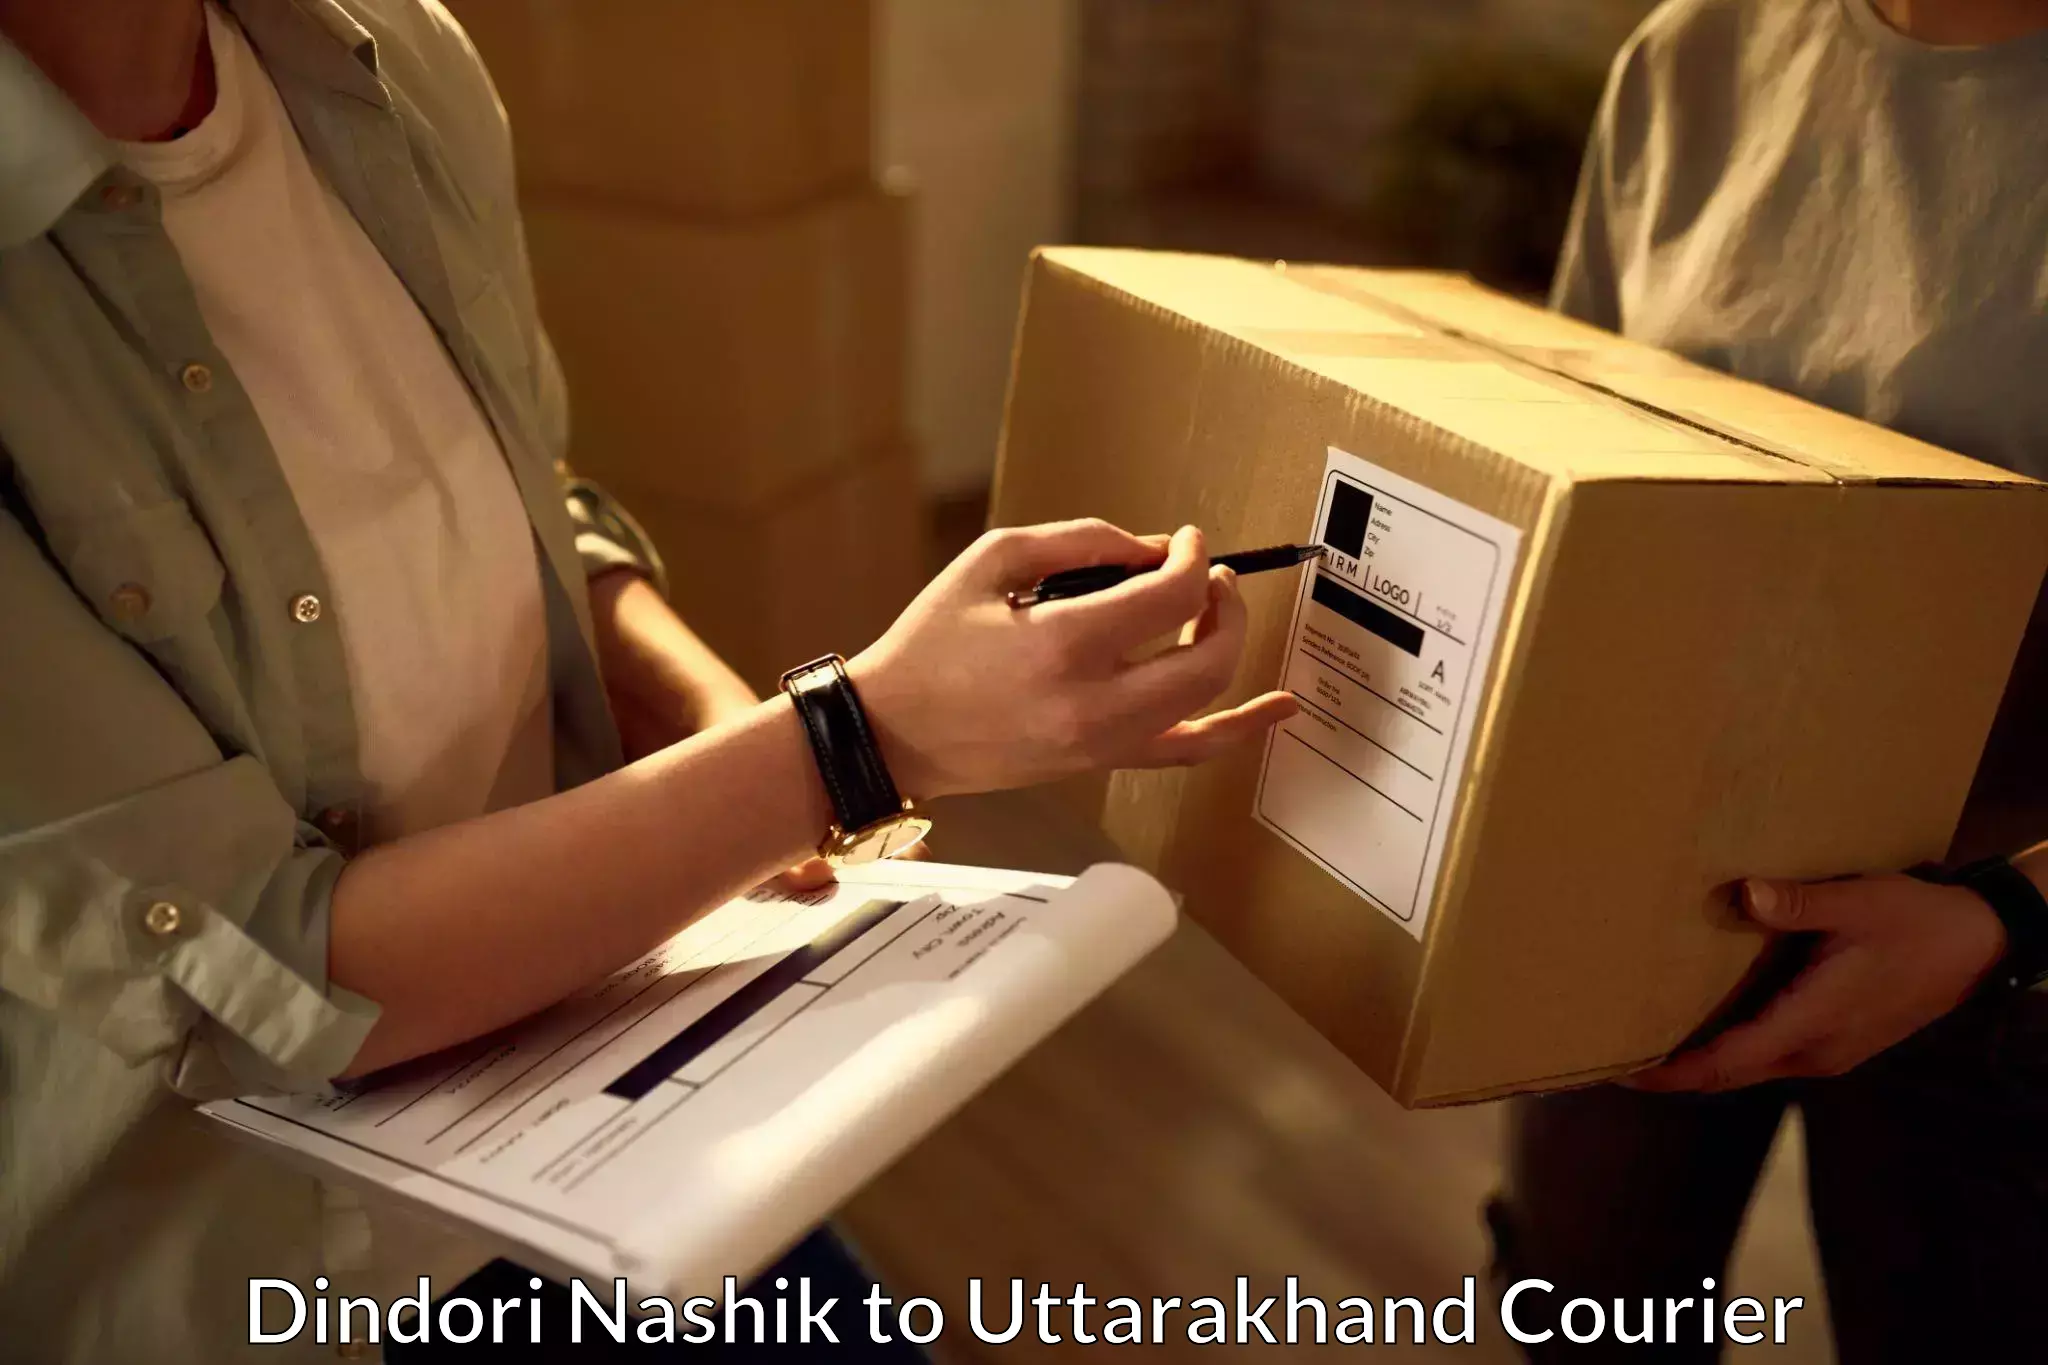 Next-day freight services Dindori Nashik to Uttarakhand